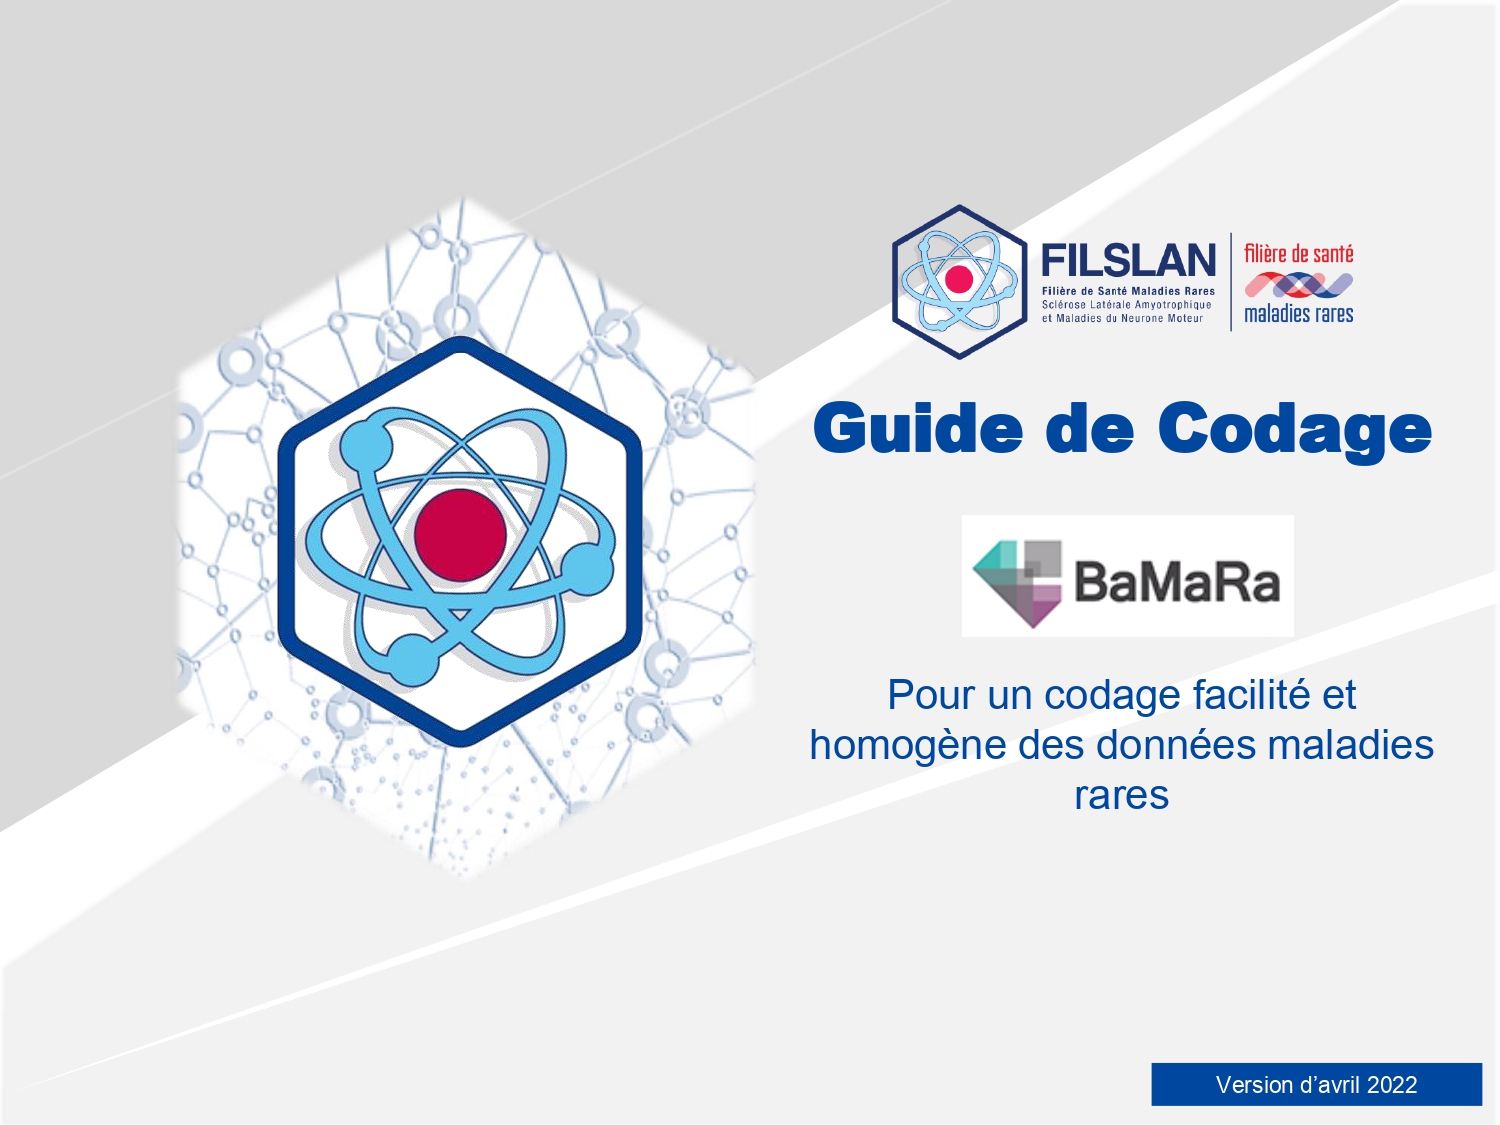 En avril 2022, la filière FilSLAN met en ligne le Guide de Codage BaMaRa pour un codage facilité et homogène des données maladies rares dans les Centres SLA/MNM de la filière FilSLAN.